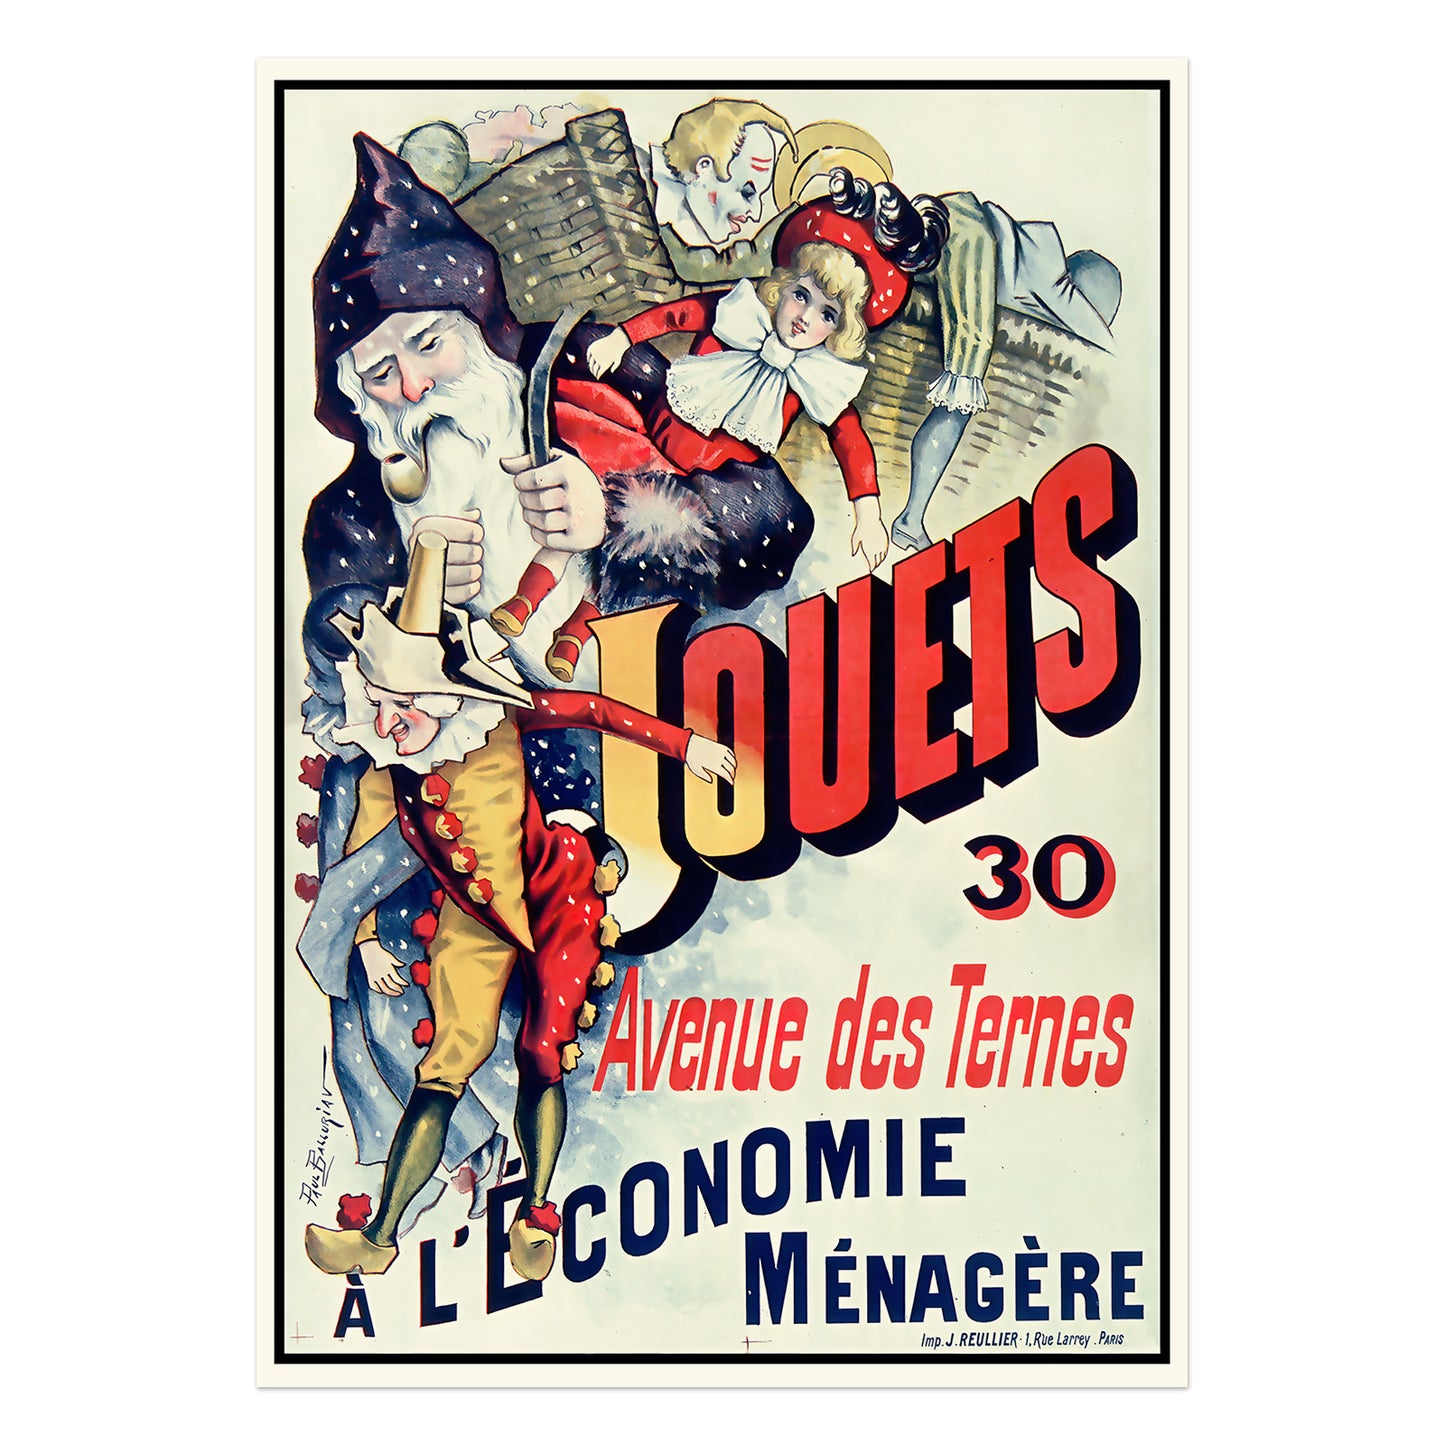 Jouets, 30 Avenue des Ternes - advertisement for toy shop